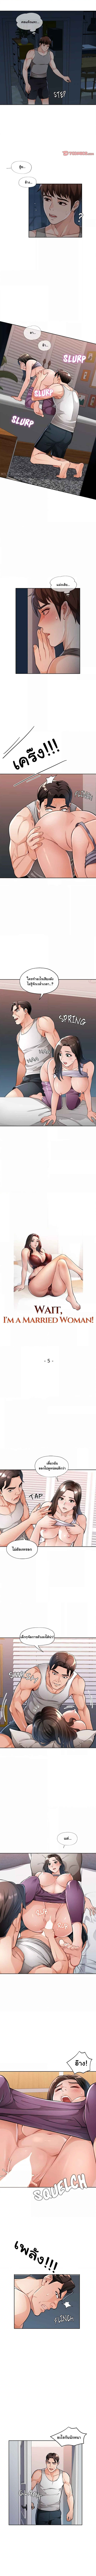 Wait, Iโ€m a Married Woman 5 1